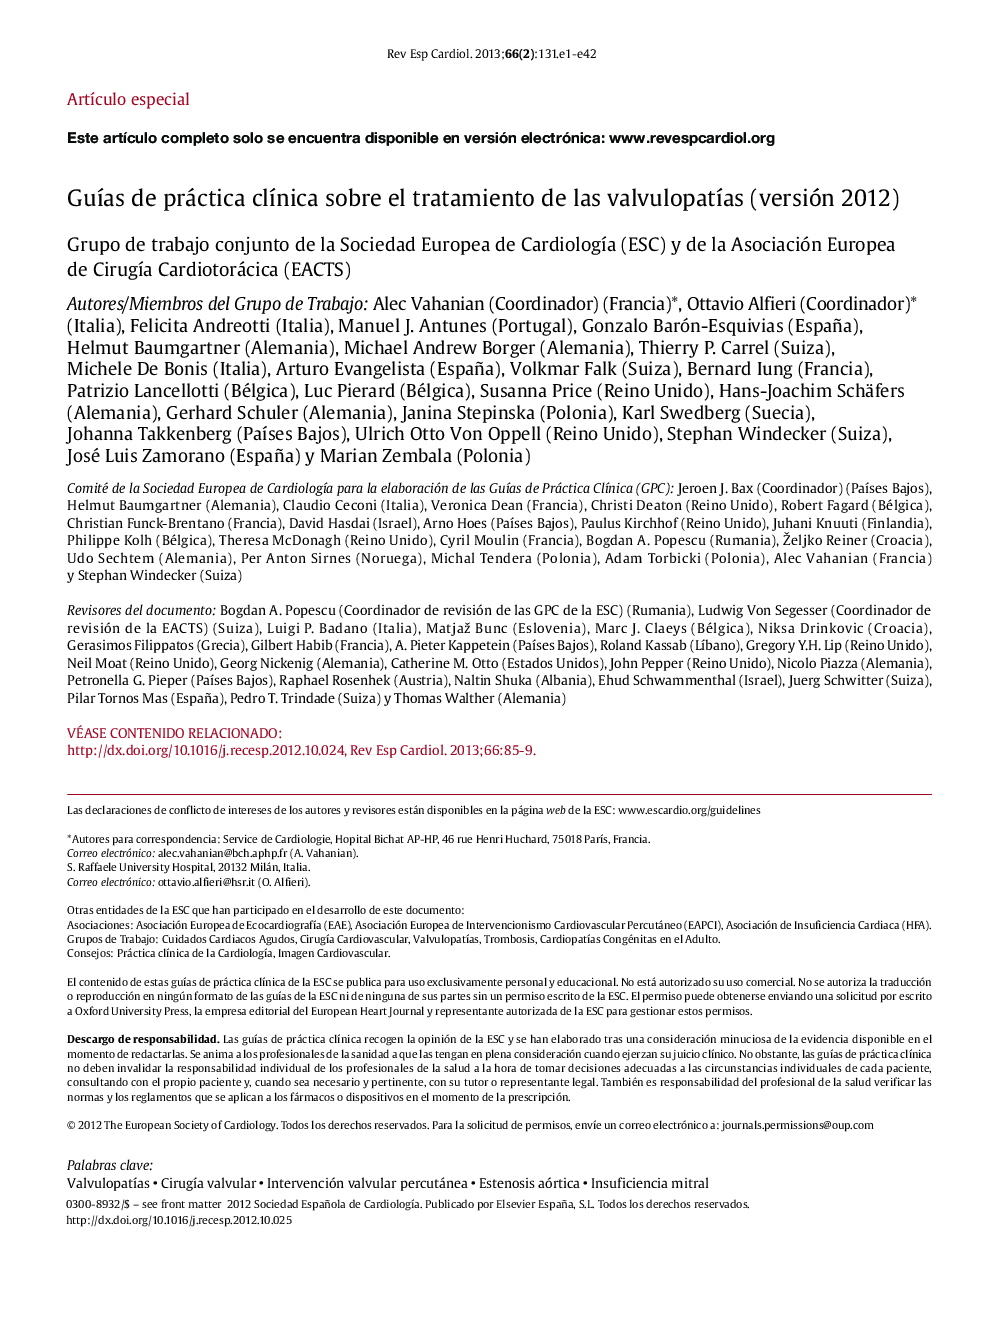 GuÃ­ade práctica clÃ­nica sobre el tratamiento de las valvulopatÃ­as (versión 2012)